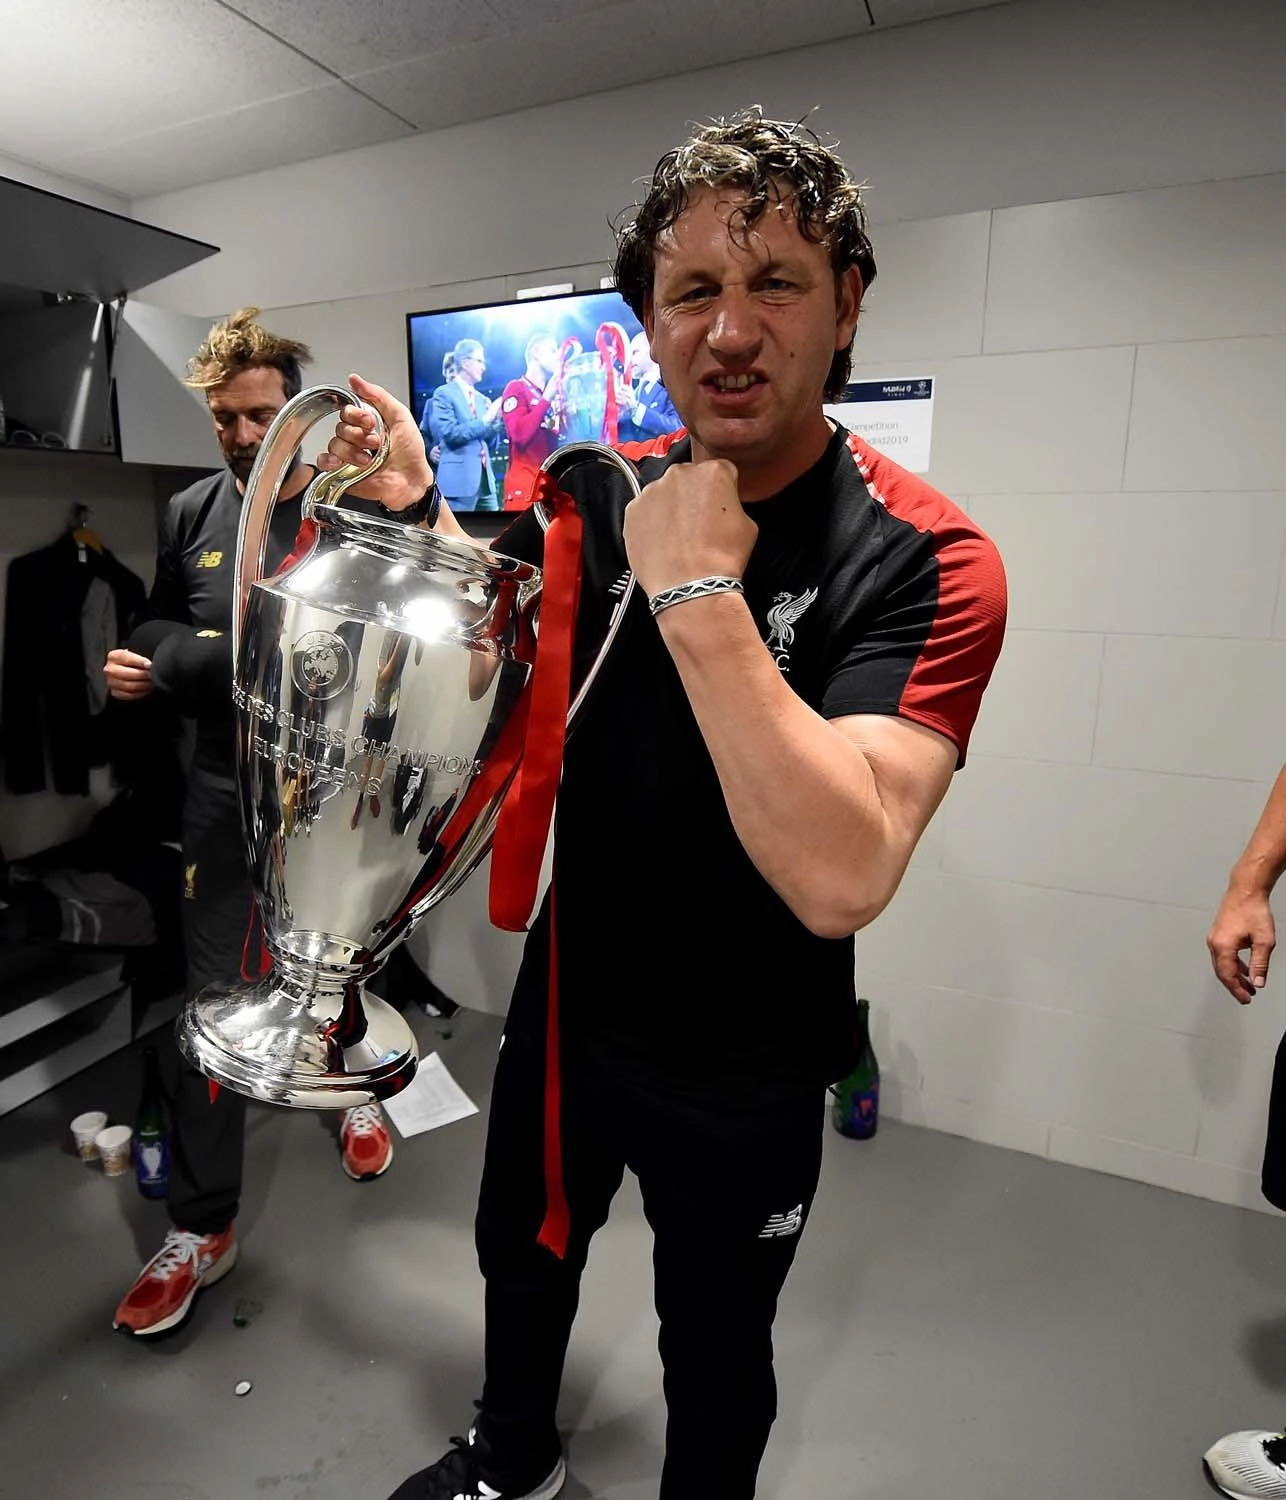 Mission erfüllt: Champions League-Ruhm 2019